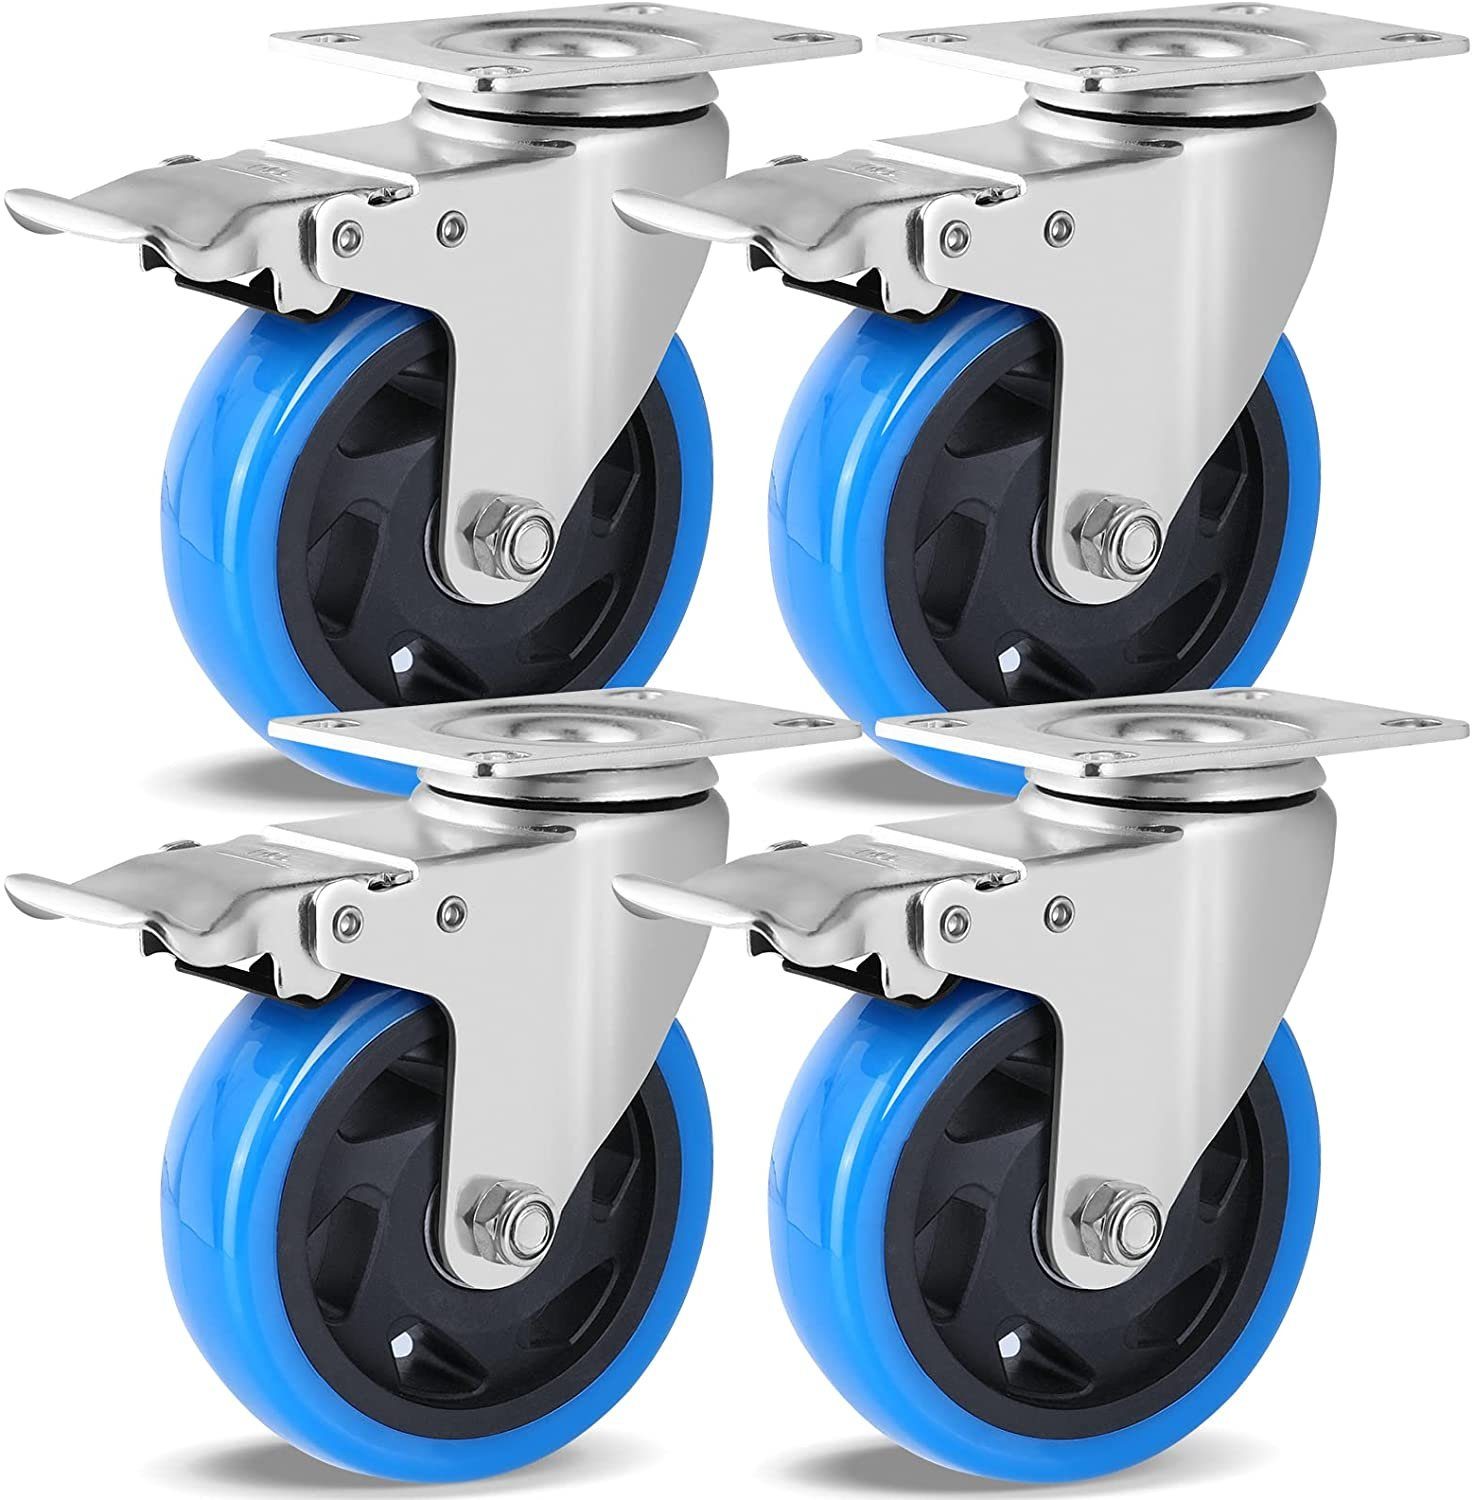 Kistenroller 600 x 400 mm Gummiräder Bremse blue wheel blaue Rolle Bodenschutz 